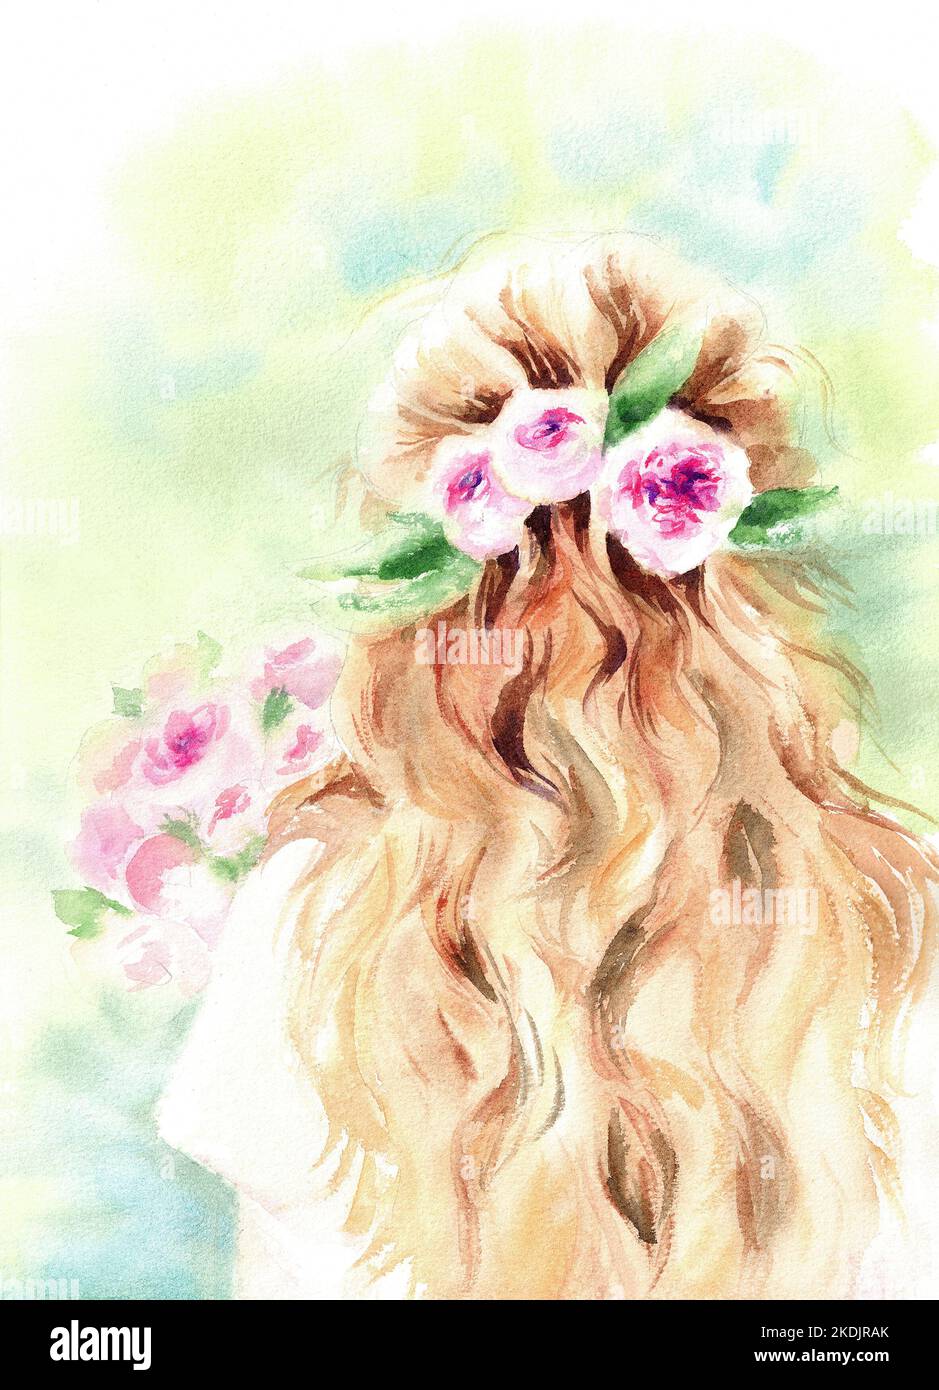 Portrait d'une fille en couleur d'eau dessinés à la main, avec des fleurs dans ses cheveux, debout dans un pré avec un bouquet de roses. Une illustration romantique et délicate. Banque D'Images